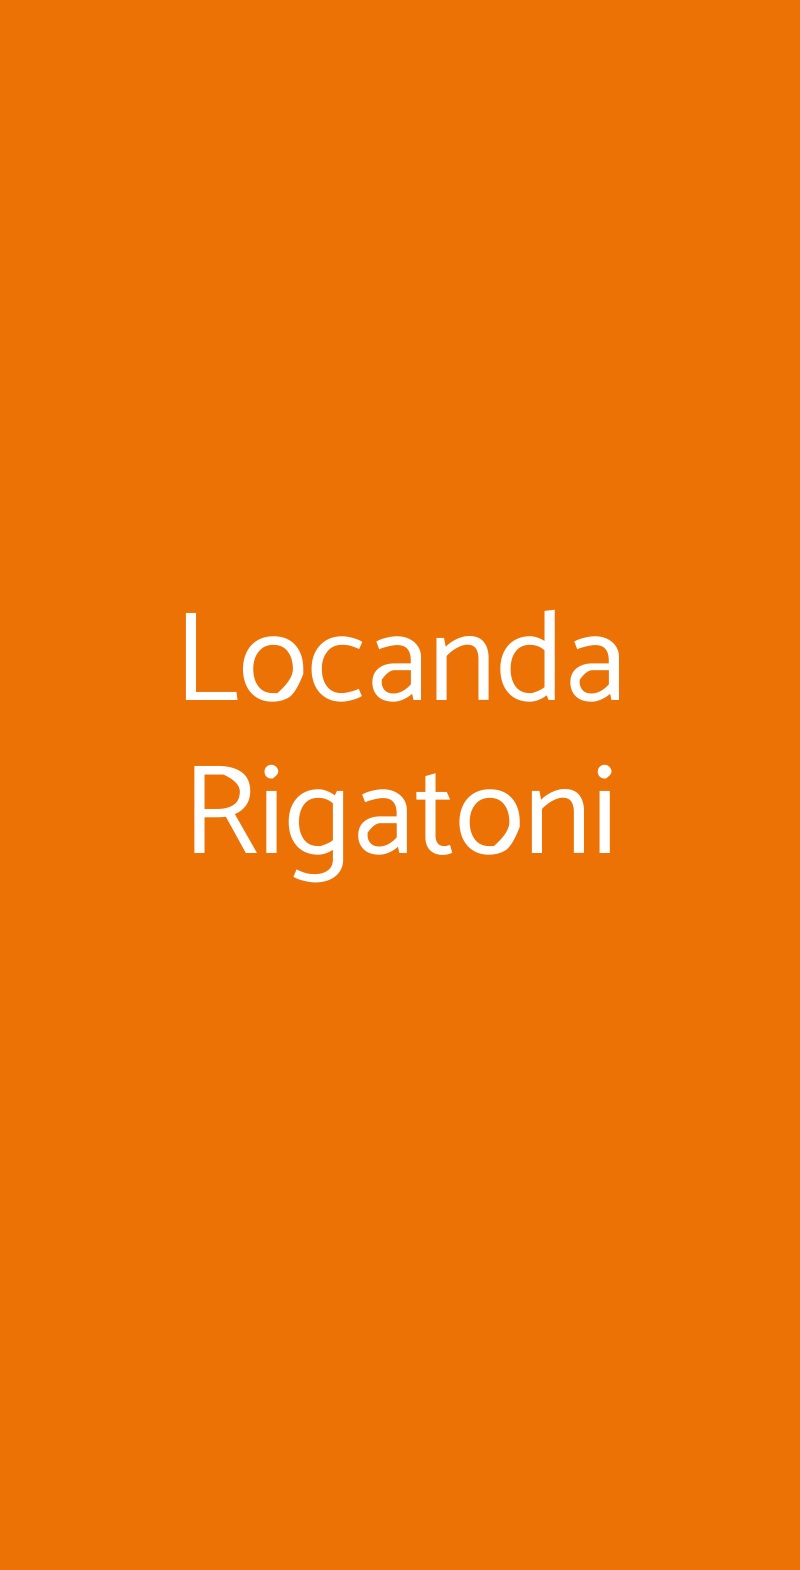 Locanda Rigatoni Roma menù 1 pagina